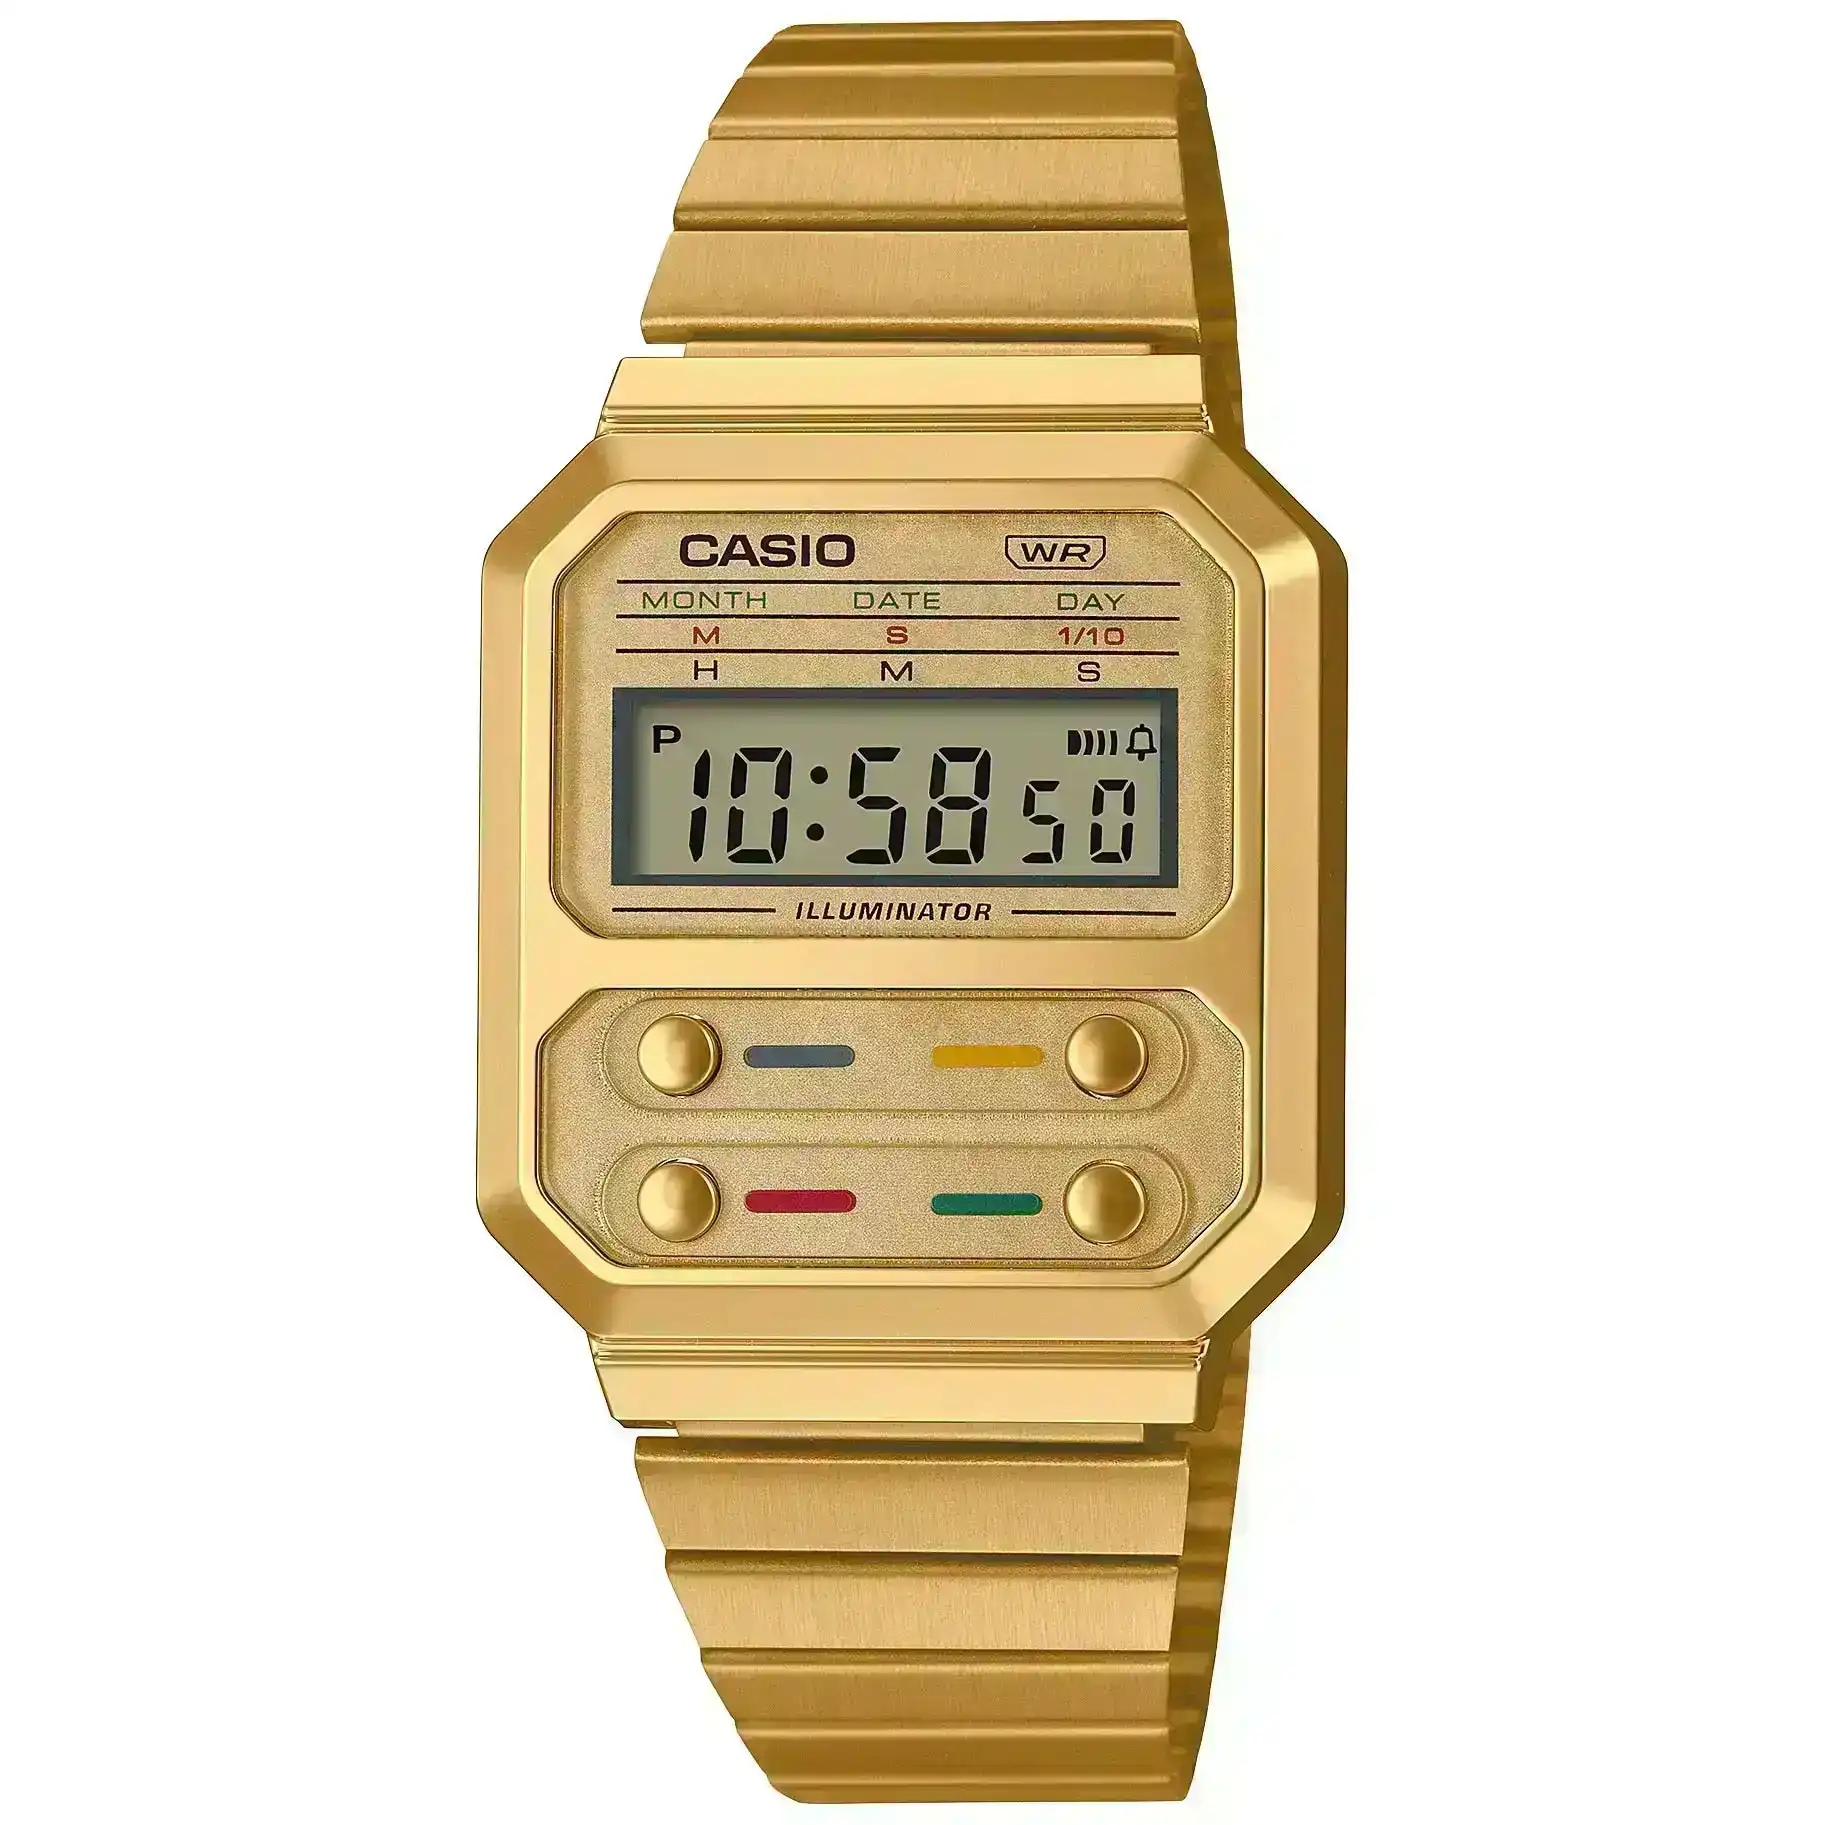 Casio Gold Retro Style Unisex Multifunction Digital Watch A100WEG-9A